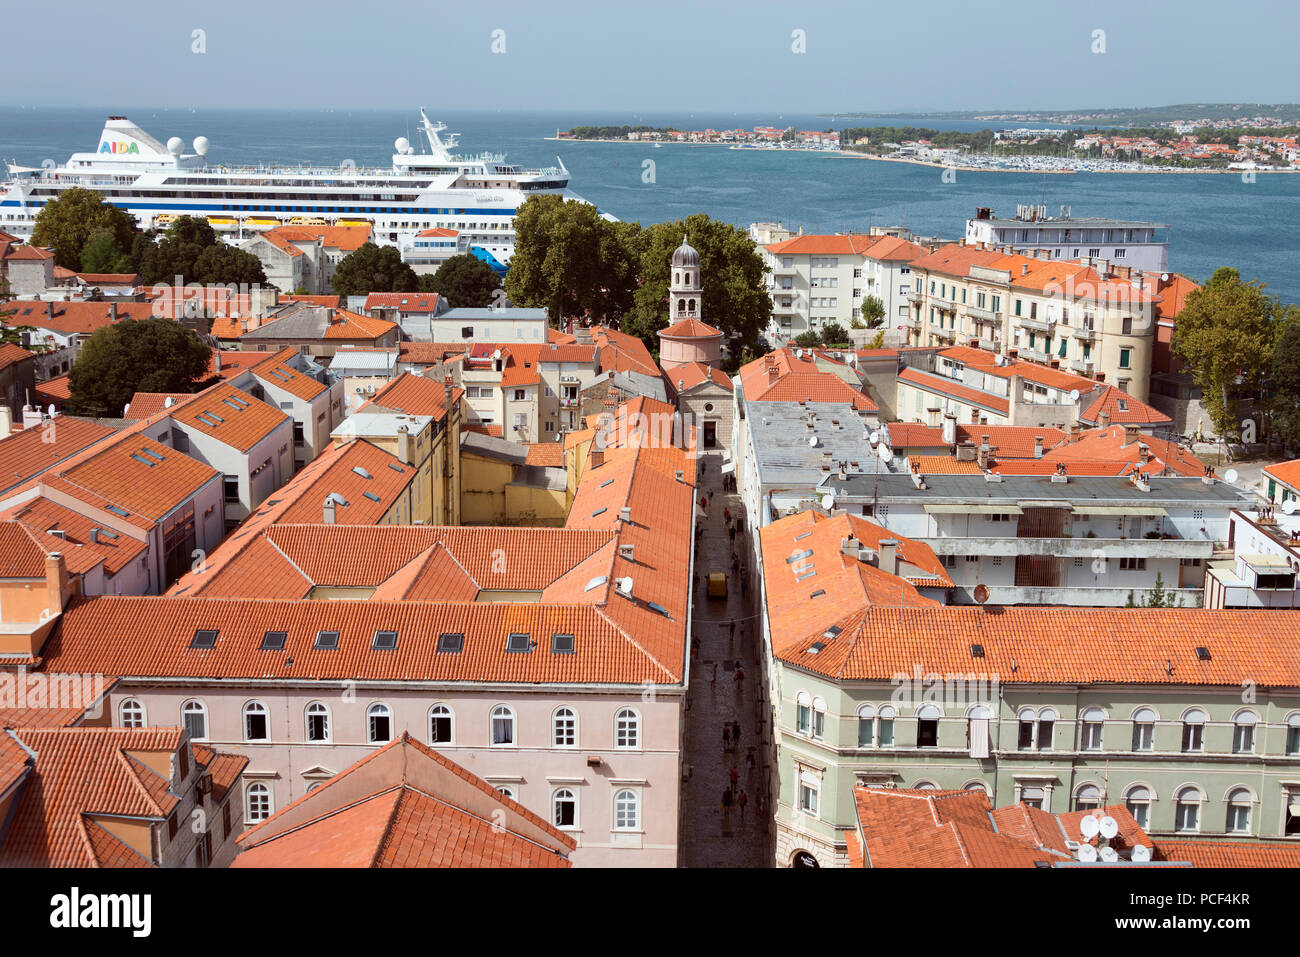 Old town, Zadar, Croatia Stock Photo